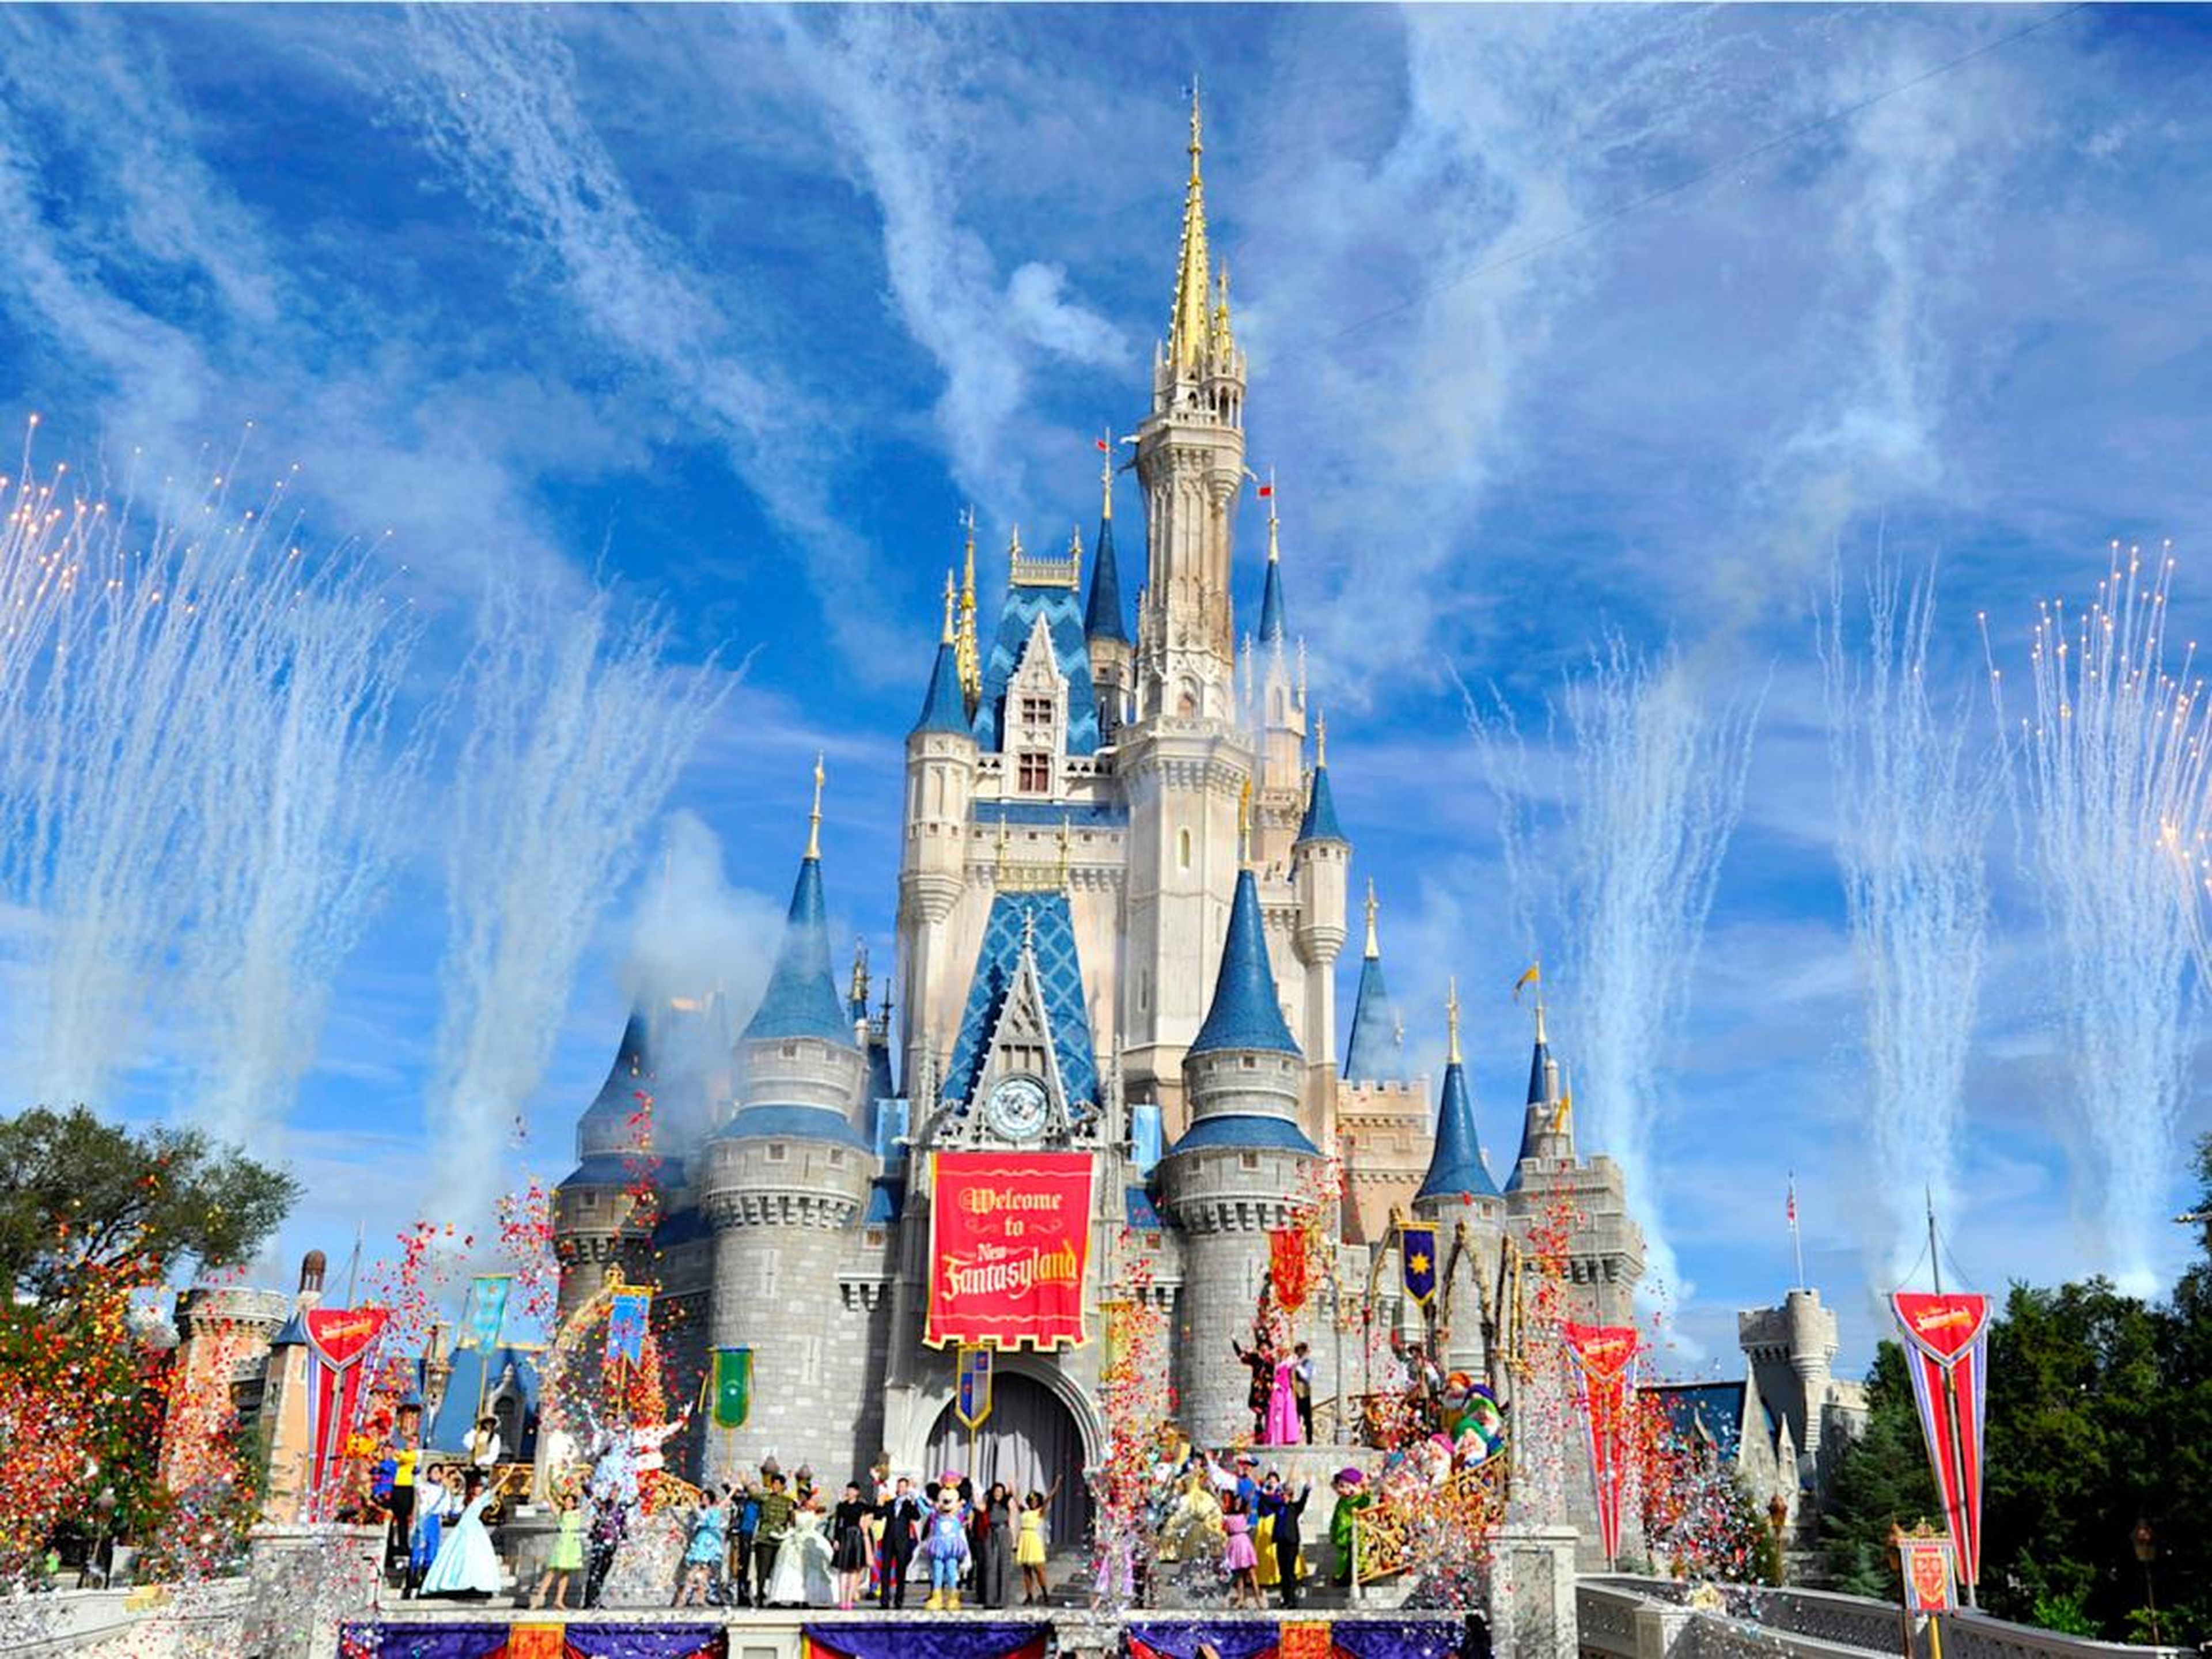 El castillo de Disney World en Orlando, Florida.